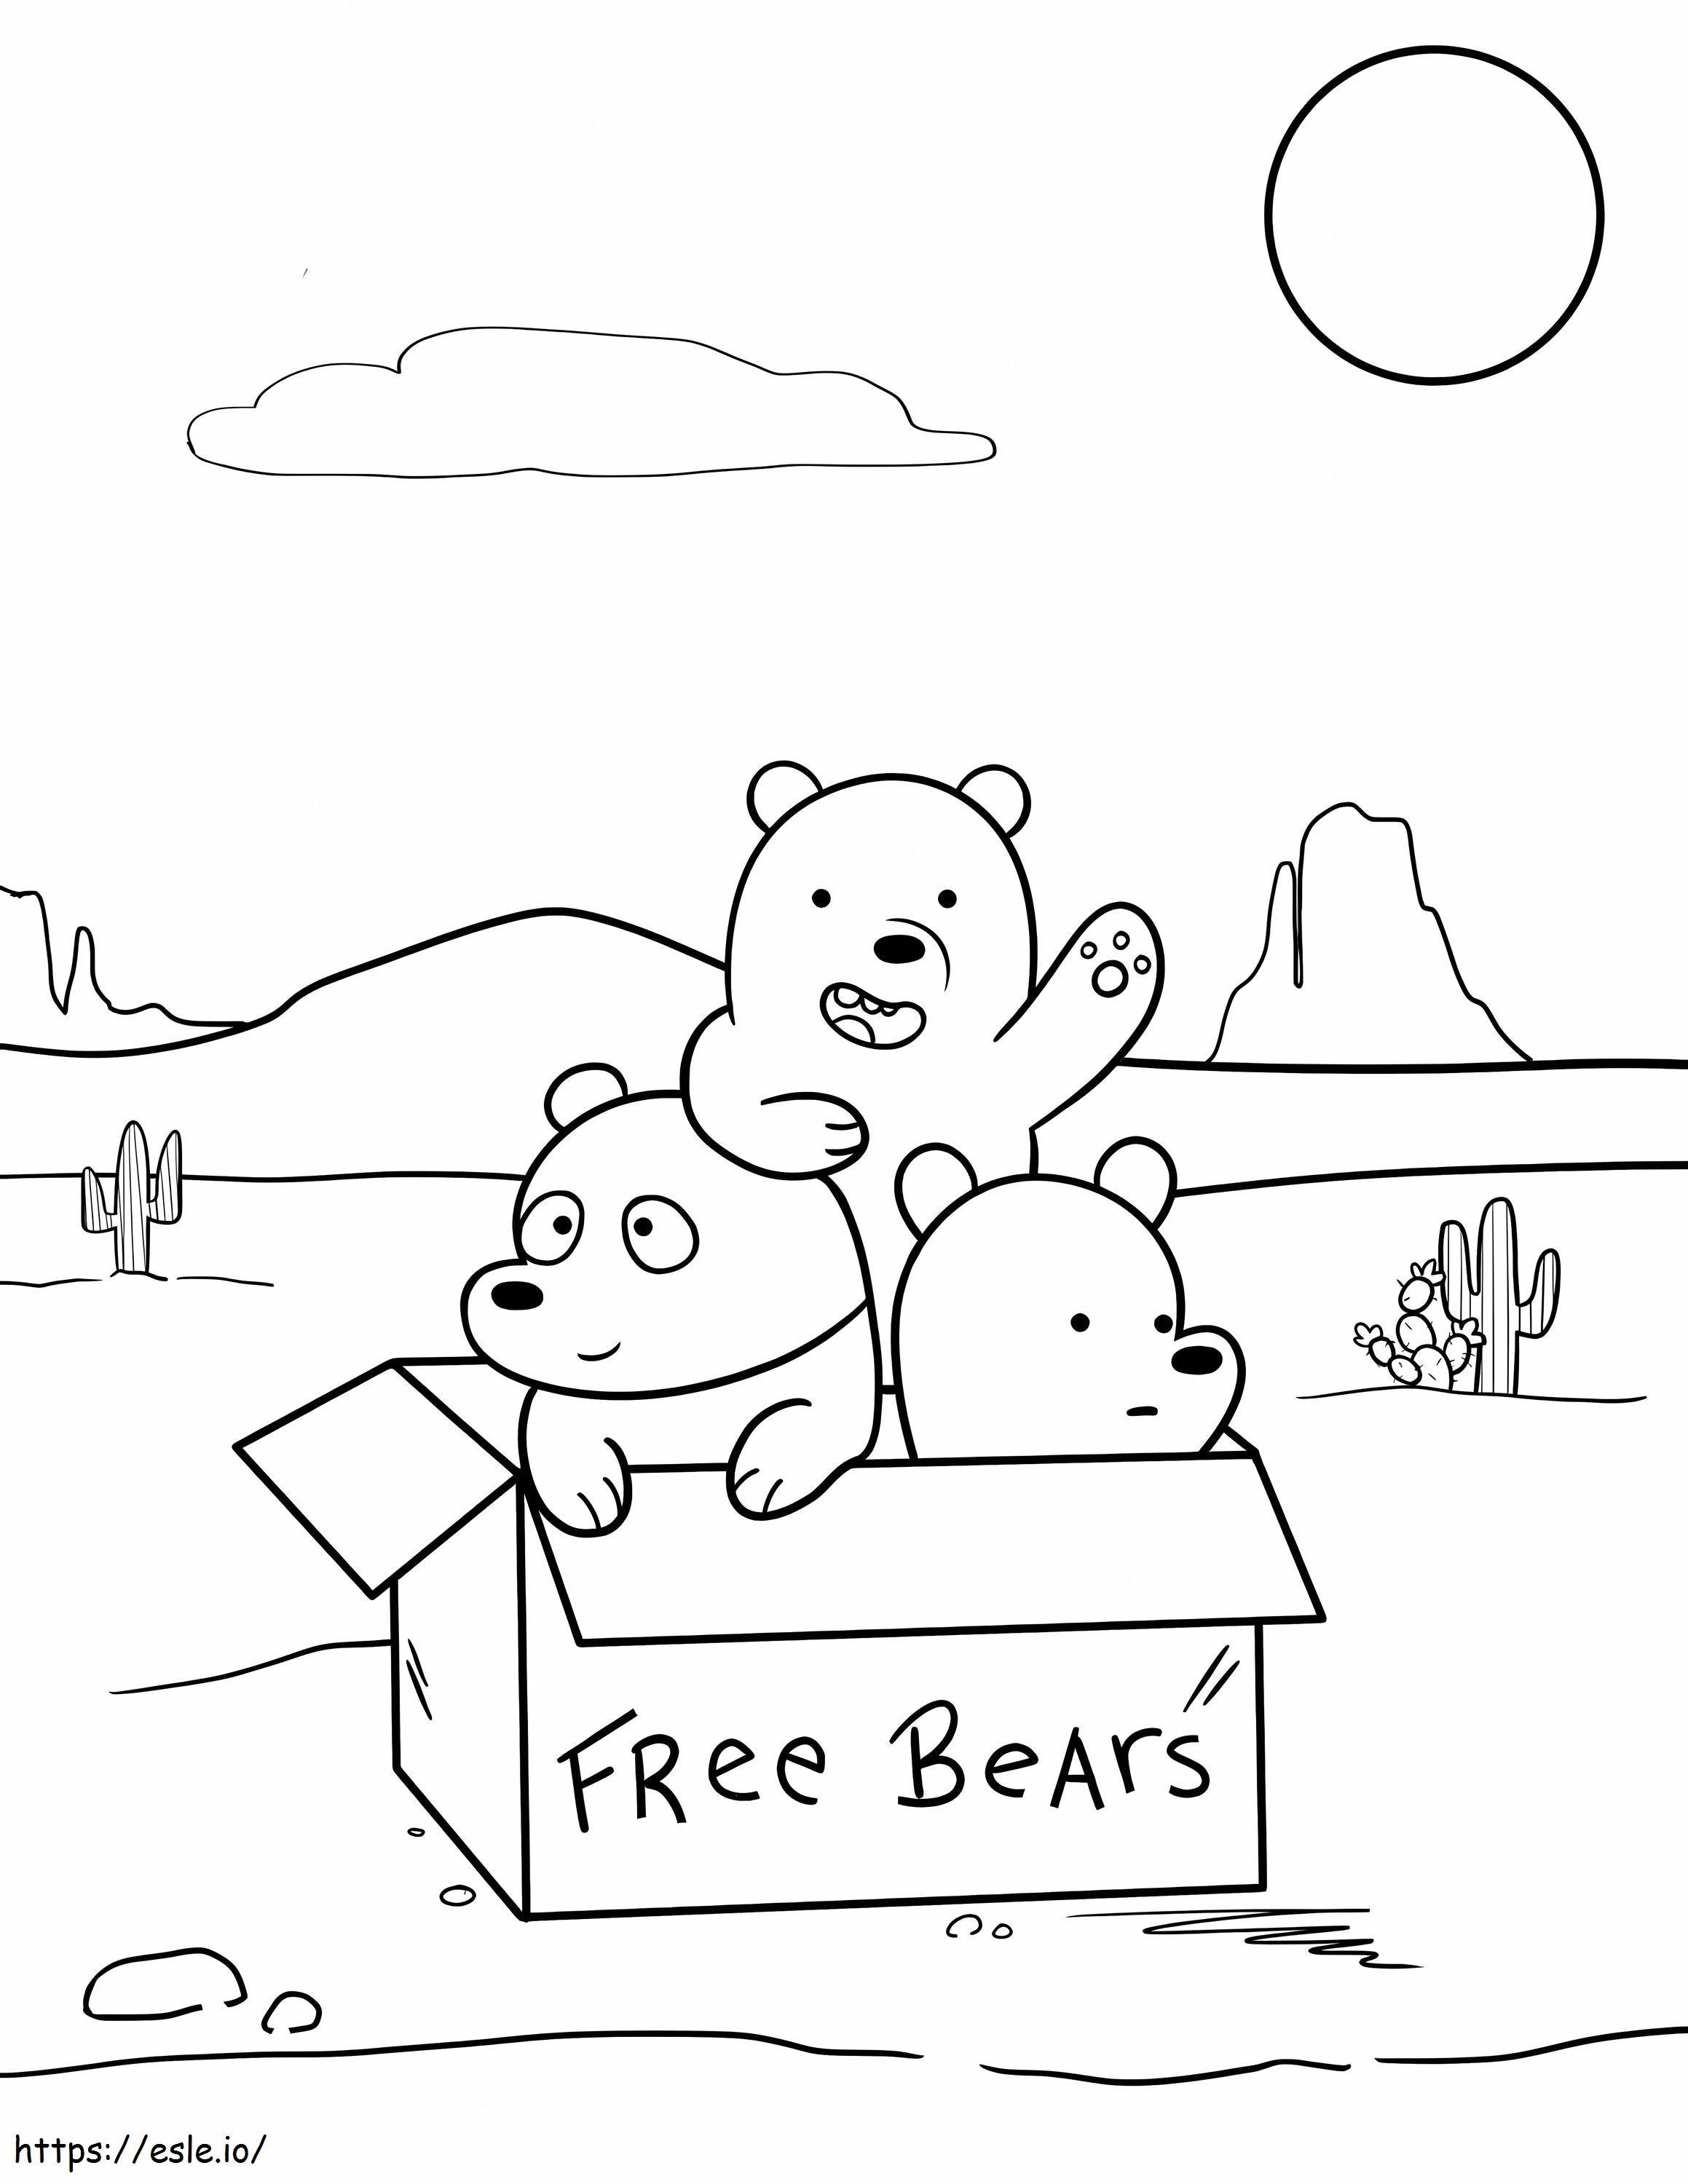 Coloriage Trois petits frères ours dans une boîte à imprimer dessin